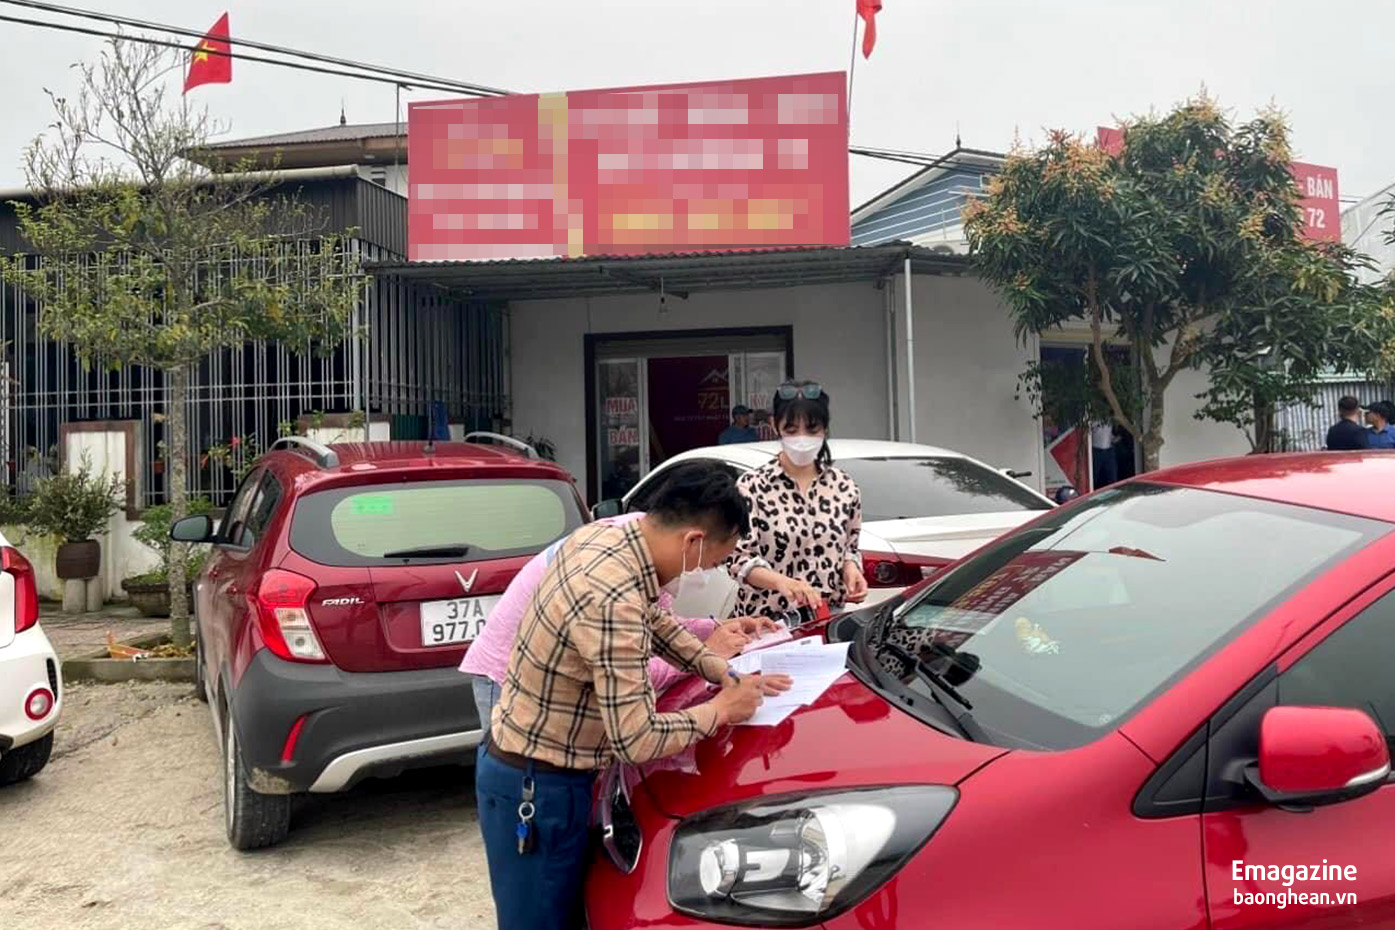 Khách đặt tiền cọc và làm thủ tục mua đất tại Nghi Phong ngay trên xe ô tô sau khi xem đất tại hiện trường. Ảnh: P.V